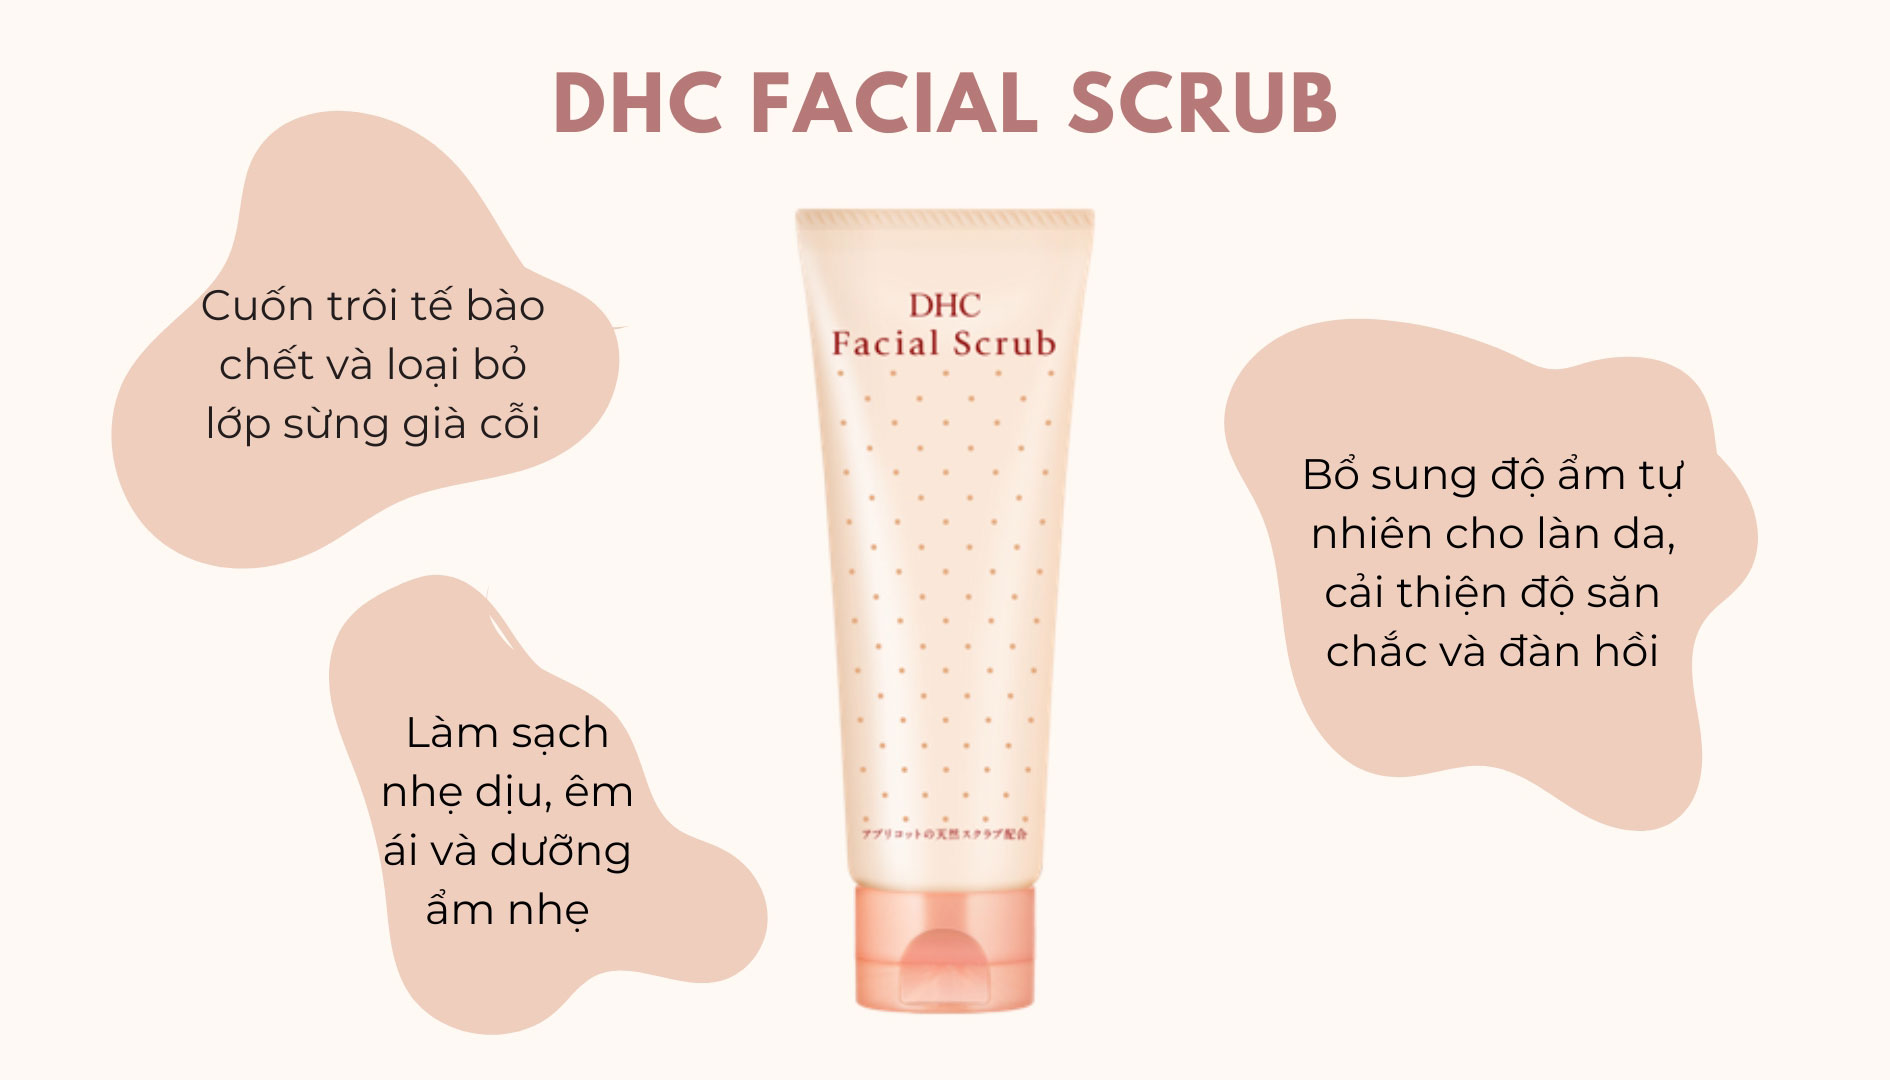 Công dụng nổi bật của sản phẩm tẩy tế bào chết DHC Facial Scrub